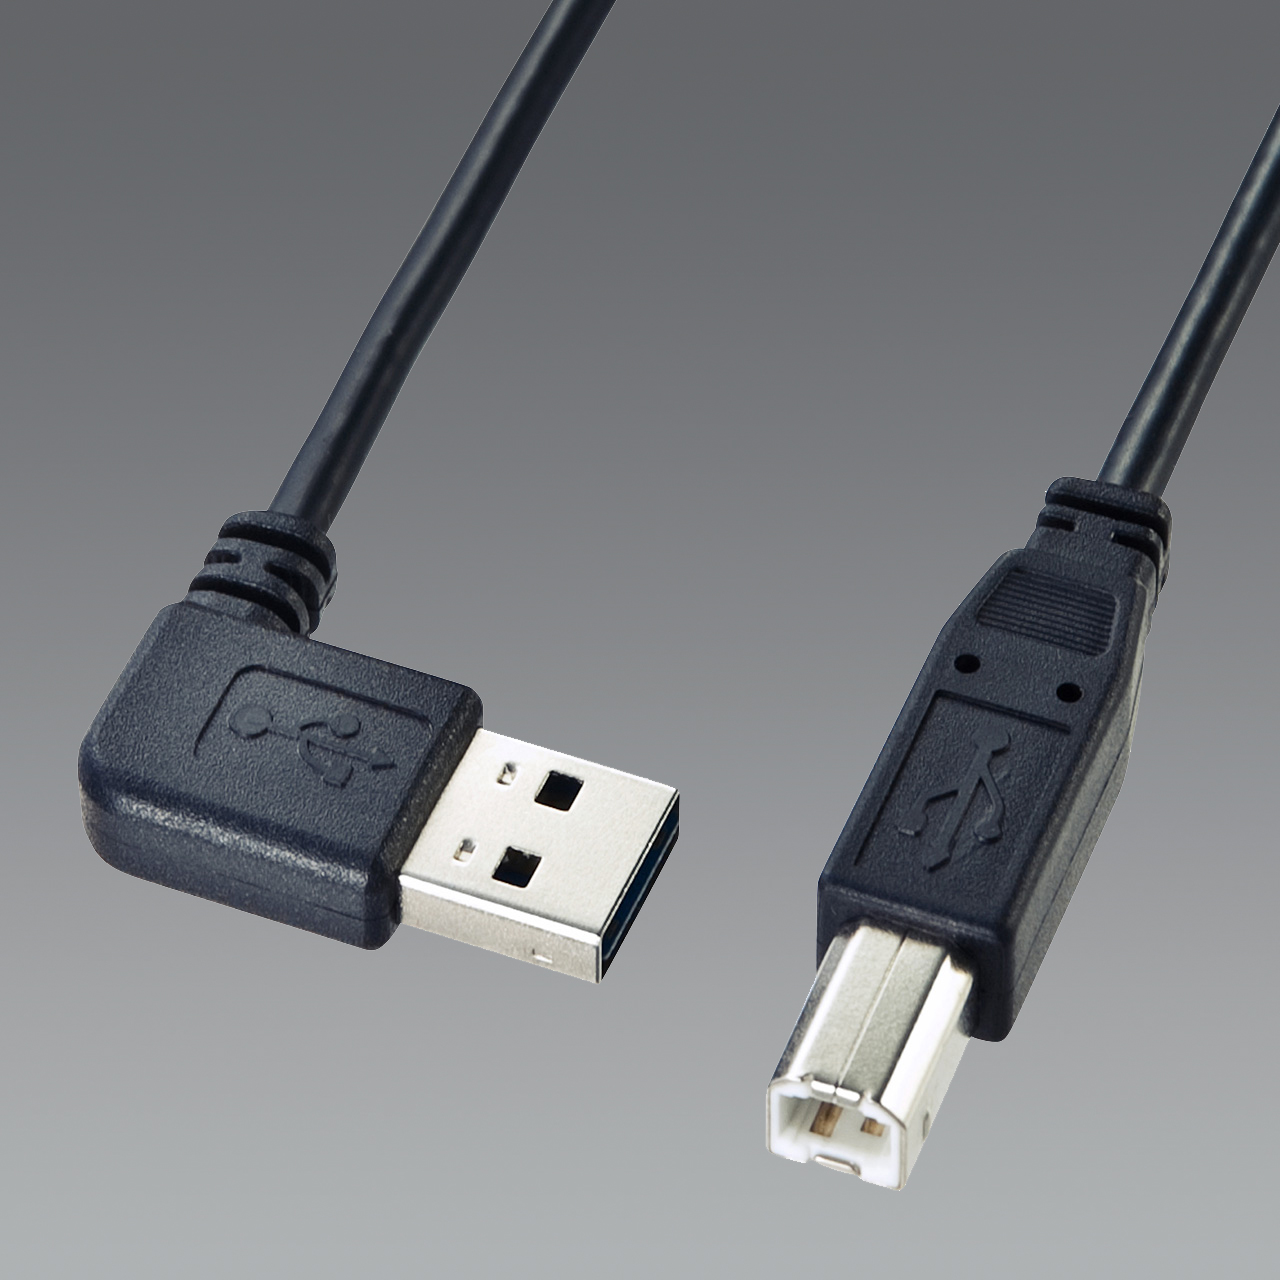 サンワサプライ 両面挿せるL型USBケーブル(A-B 標準) ブラック